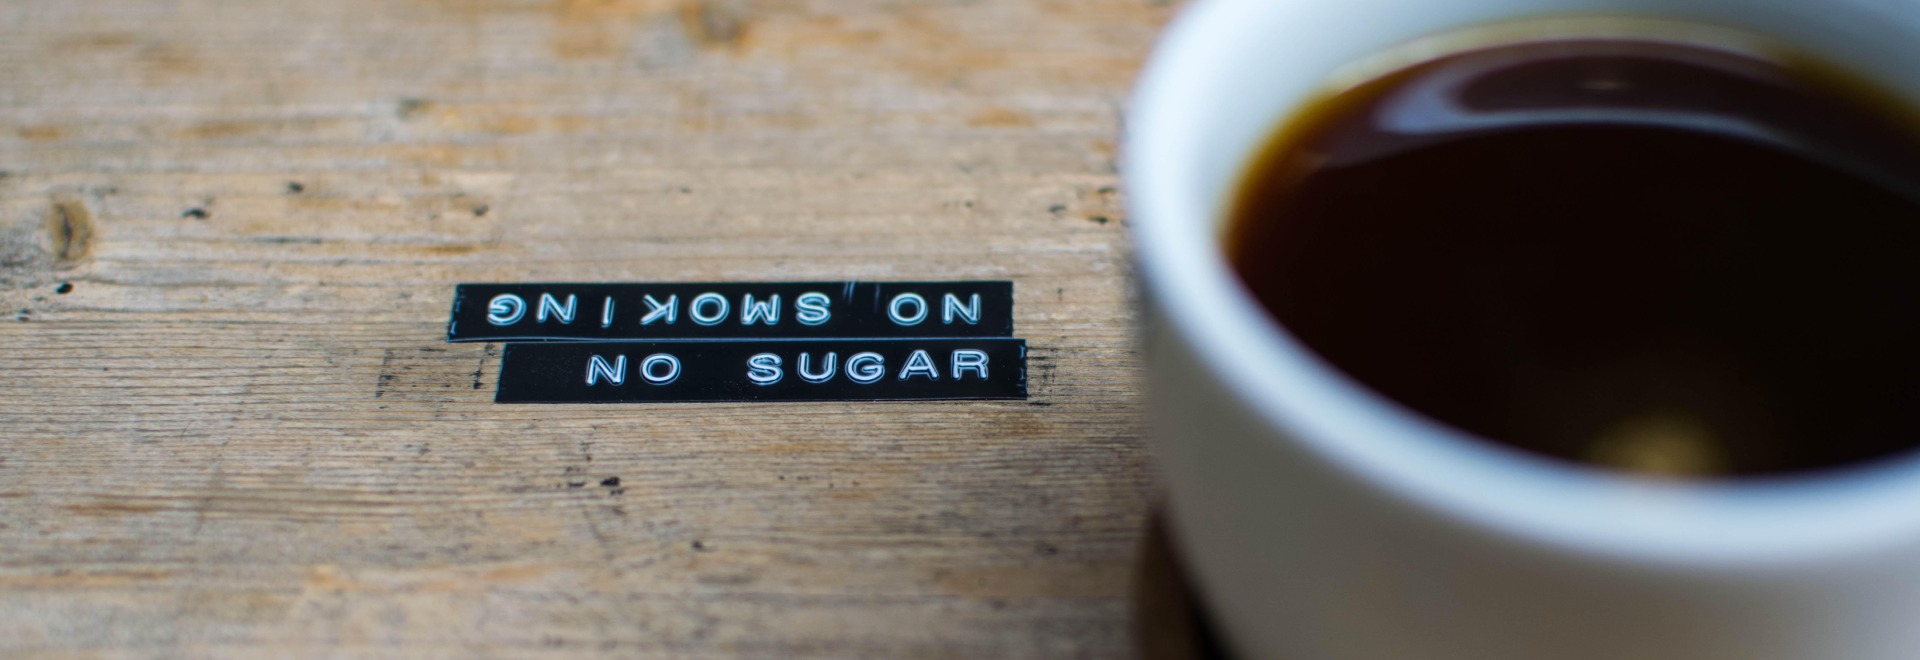 sugar in specialty coffee